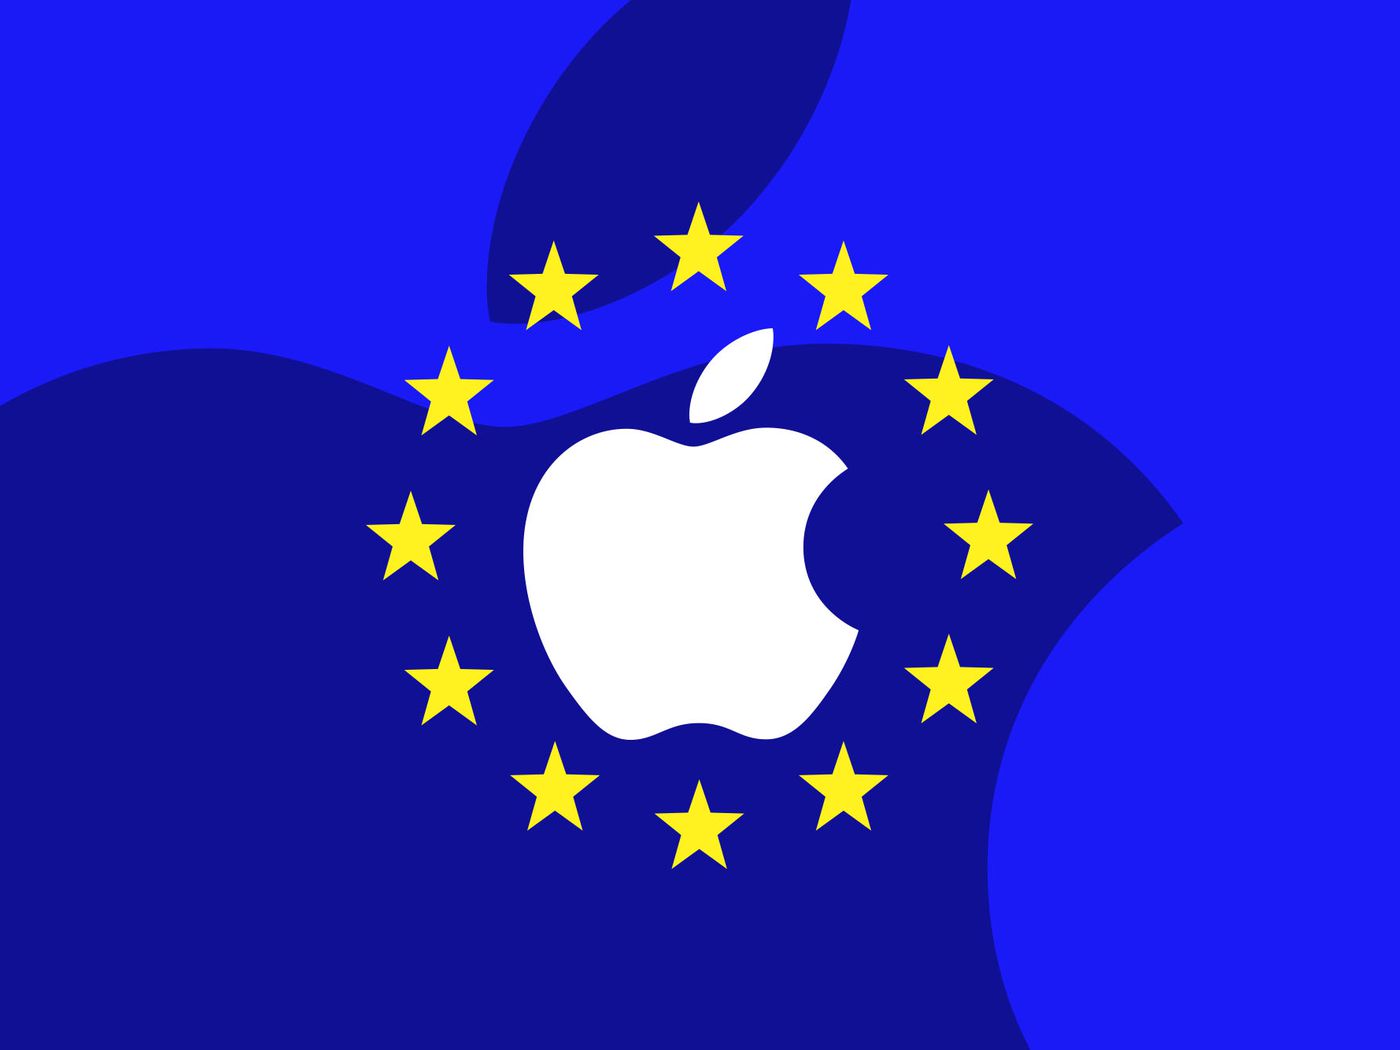 Европейская комиссия обвинила Apple в подавлении конкуренции в App Store. Компании грозит штраф в размере 10% от выручки